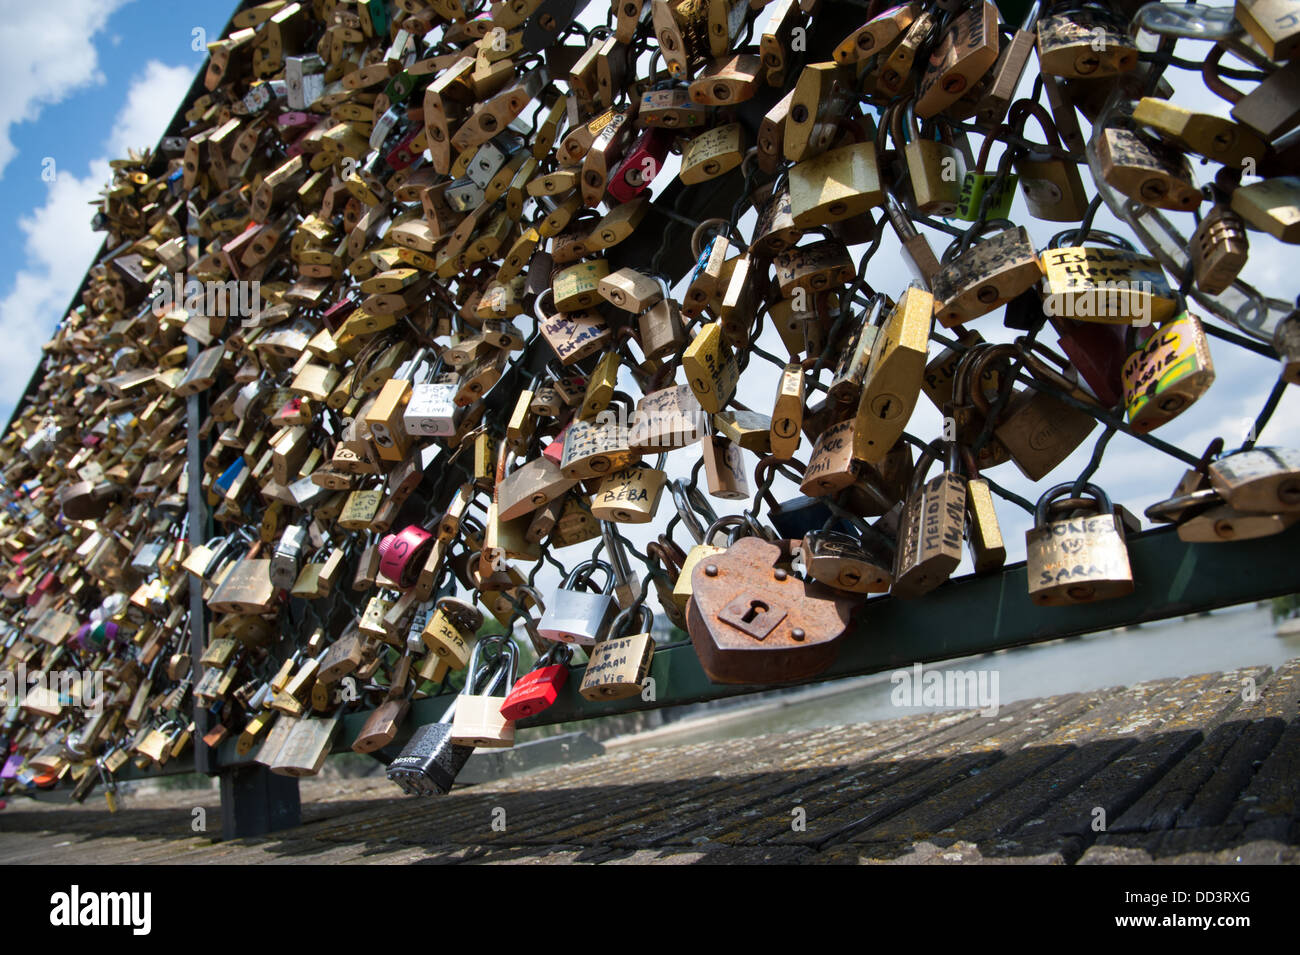 Pont des Arts bridge, Paris, Francia. Le coppie hanno messo i lucchetti con i loro nomi su di essi e di gettare la chiave della Senna. Foto Stock